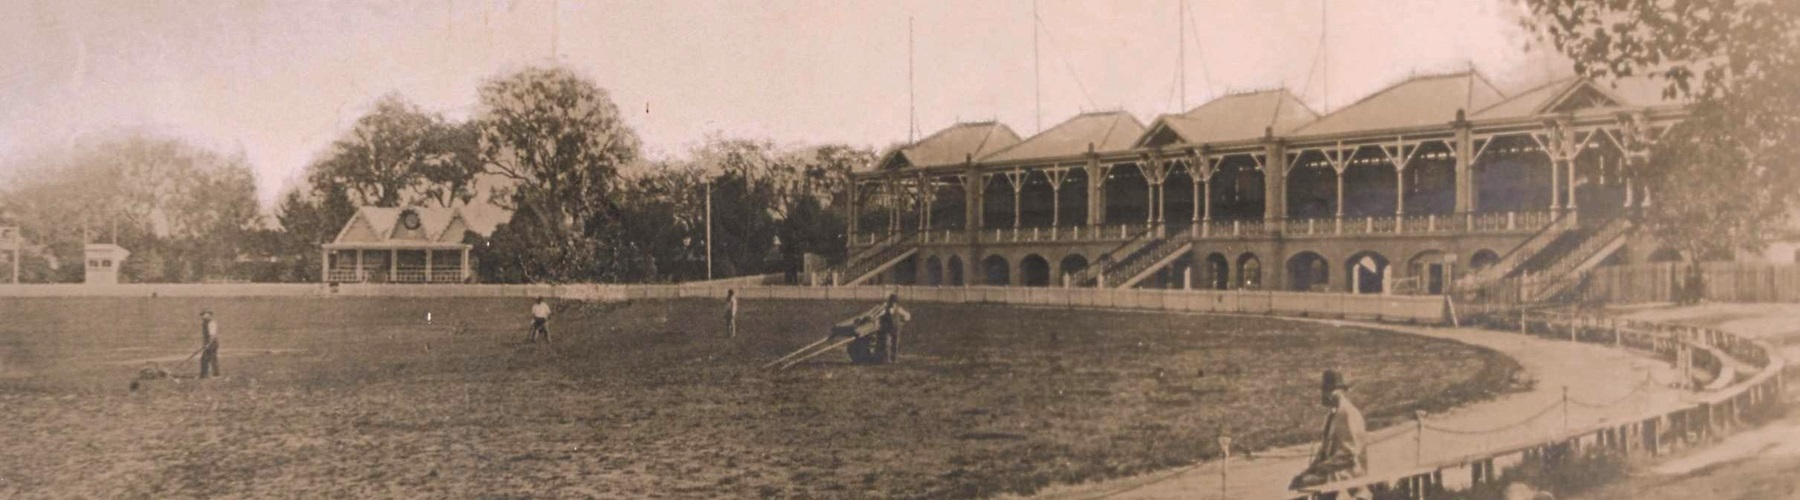 The Oval Cricket Ground 1947 Historic Photo Memorabilia 928 